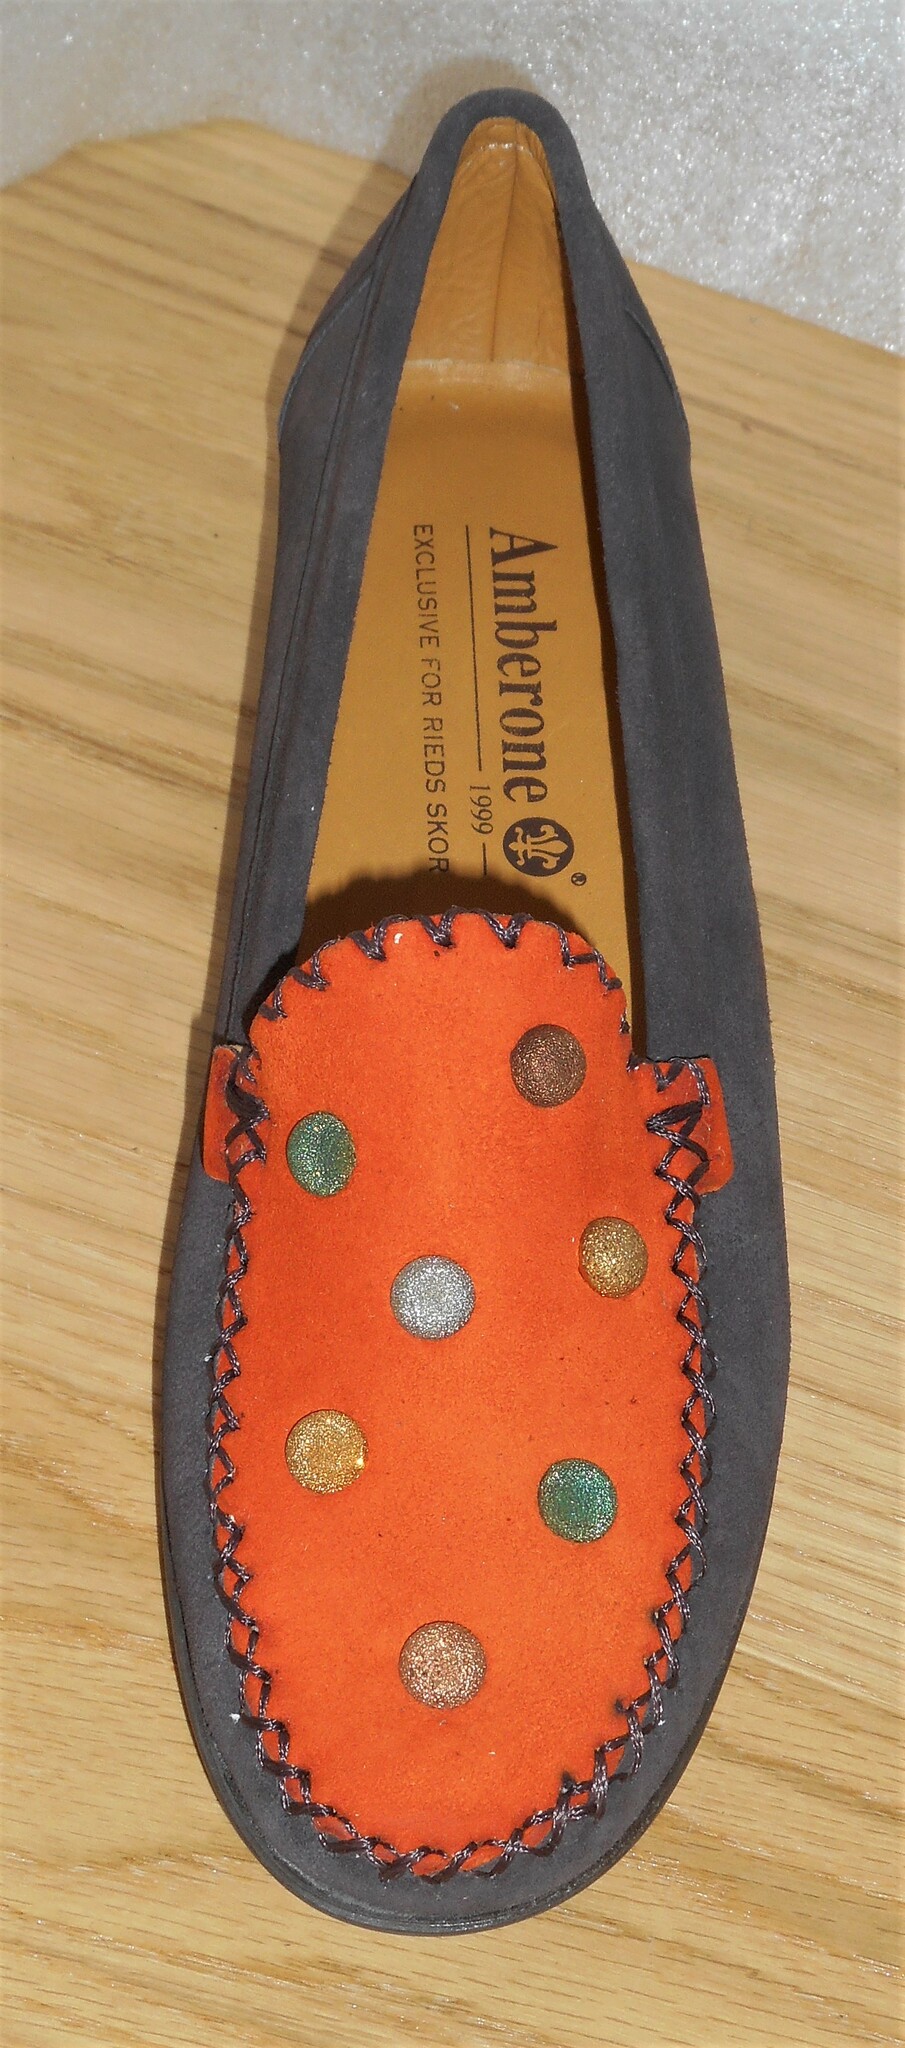 Brun/orange mockasin med glittiga prickar - från Amberone